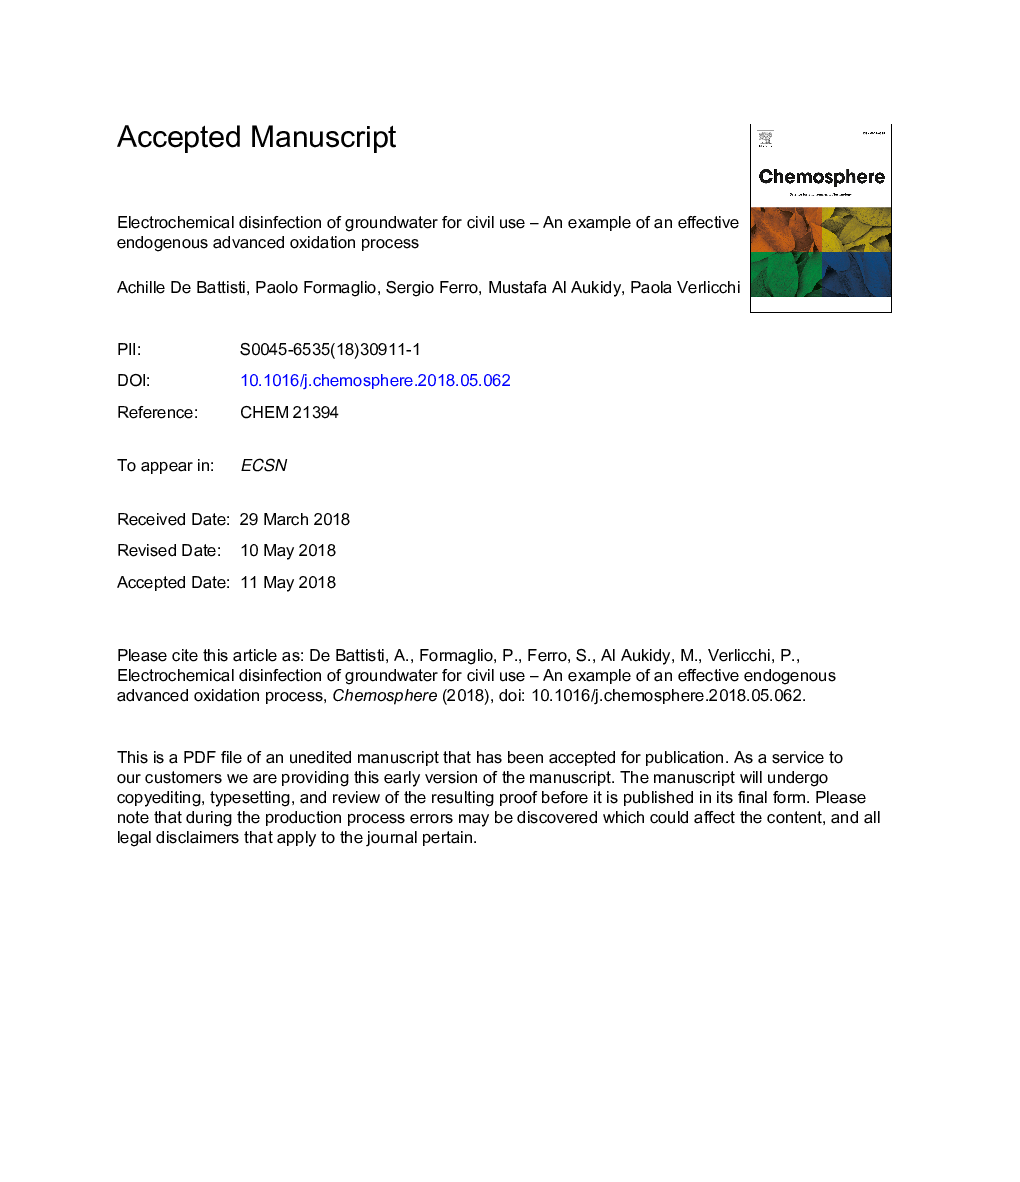 ضدعفونی الکتروشیمیایی آبهای زیرزمینی برای استفاده مدنی - یک نمونه از فرایند اکسیداسیون پیشرفته درون درونی است 